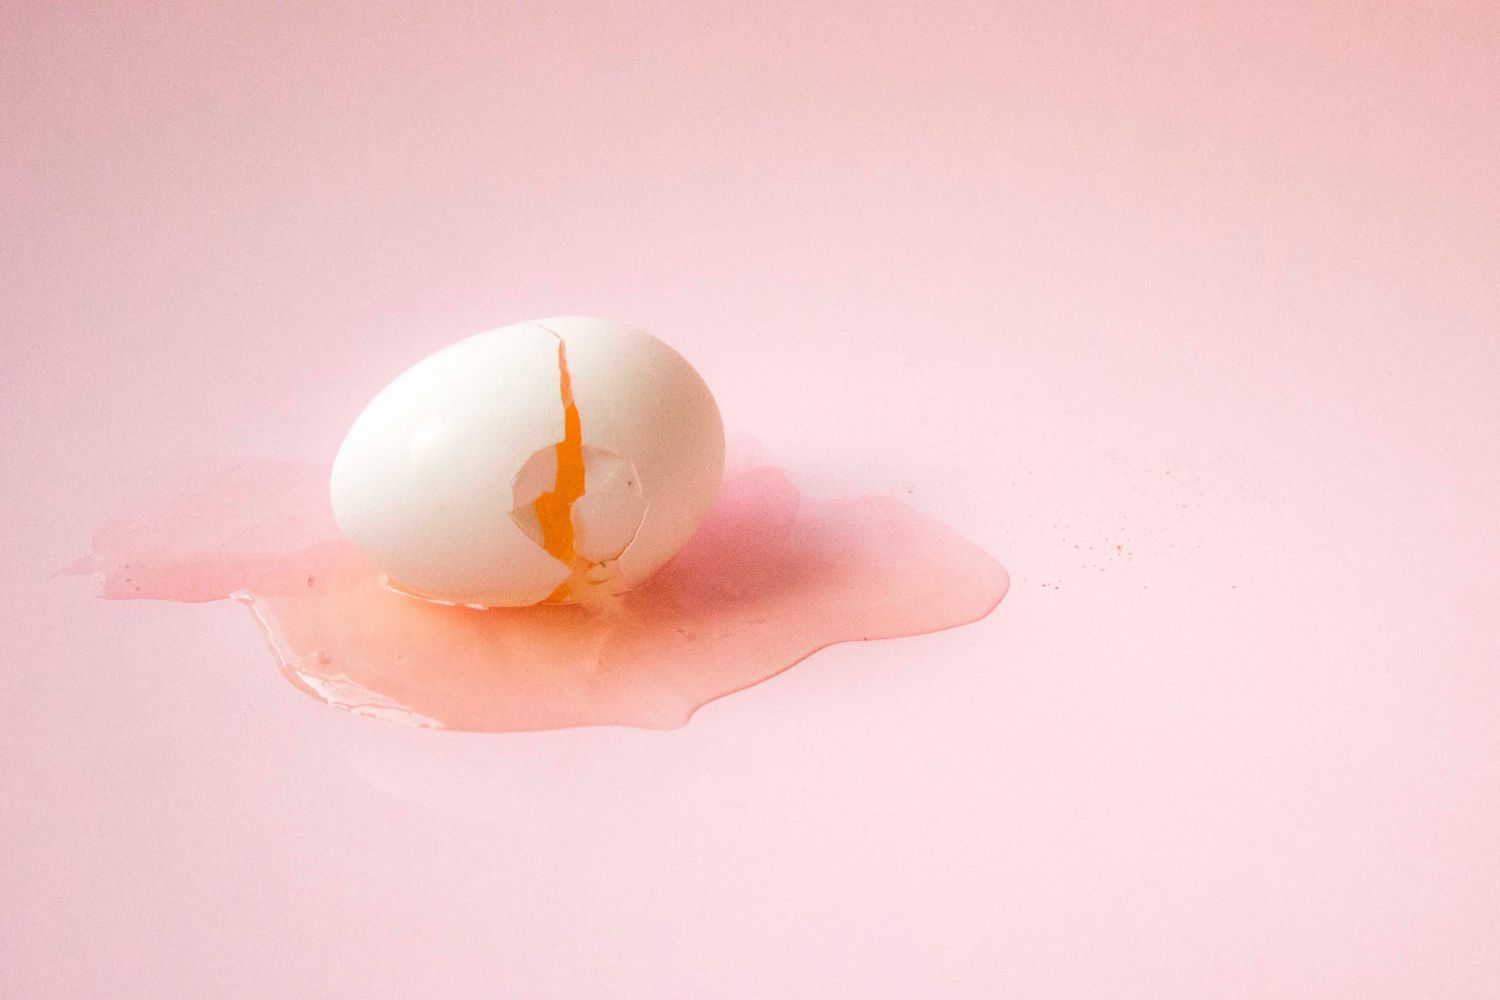 Trứng gà nào tốt cho sức khỏe nhất: Trứng thông thường, trứng giàu omega-3 hay trứng nuôi tự nhiên?